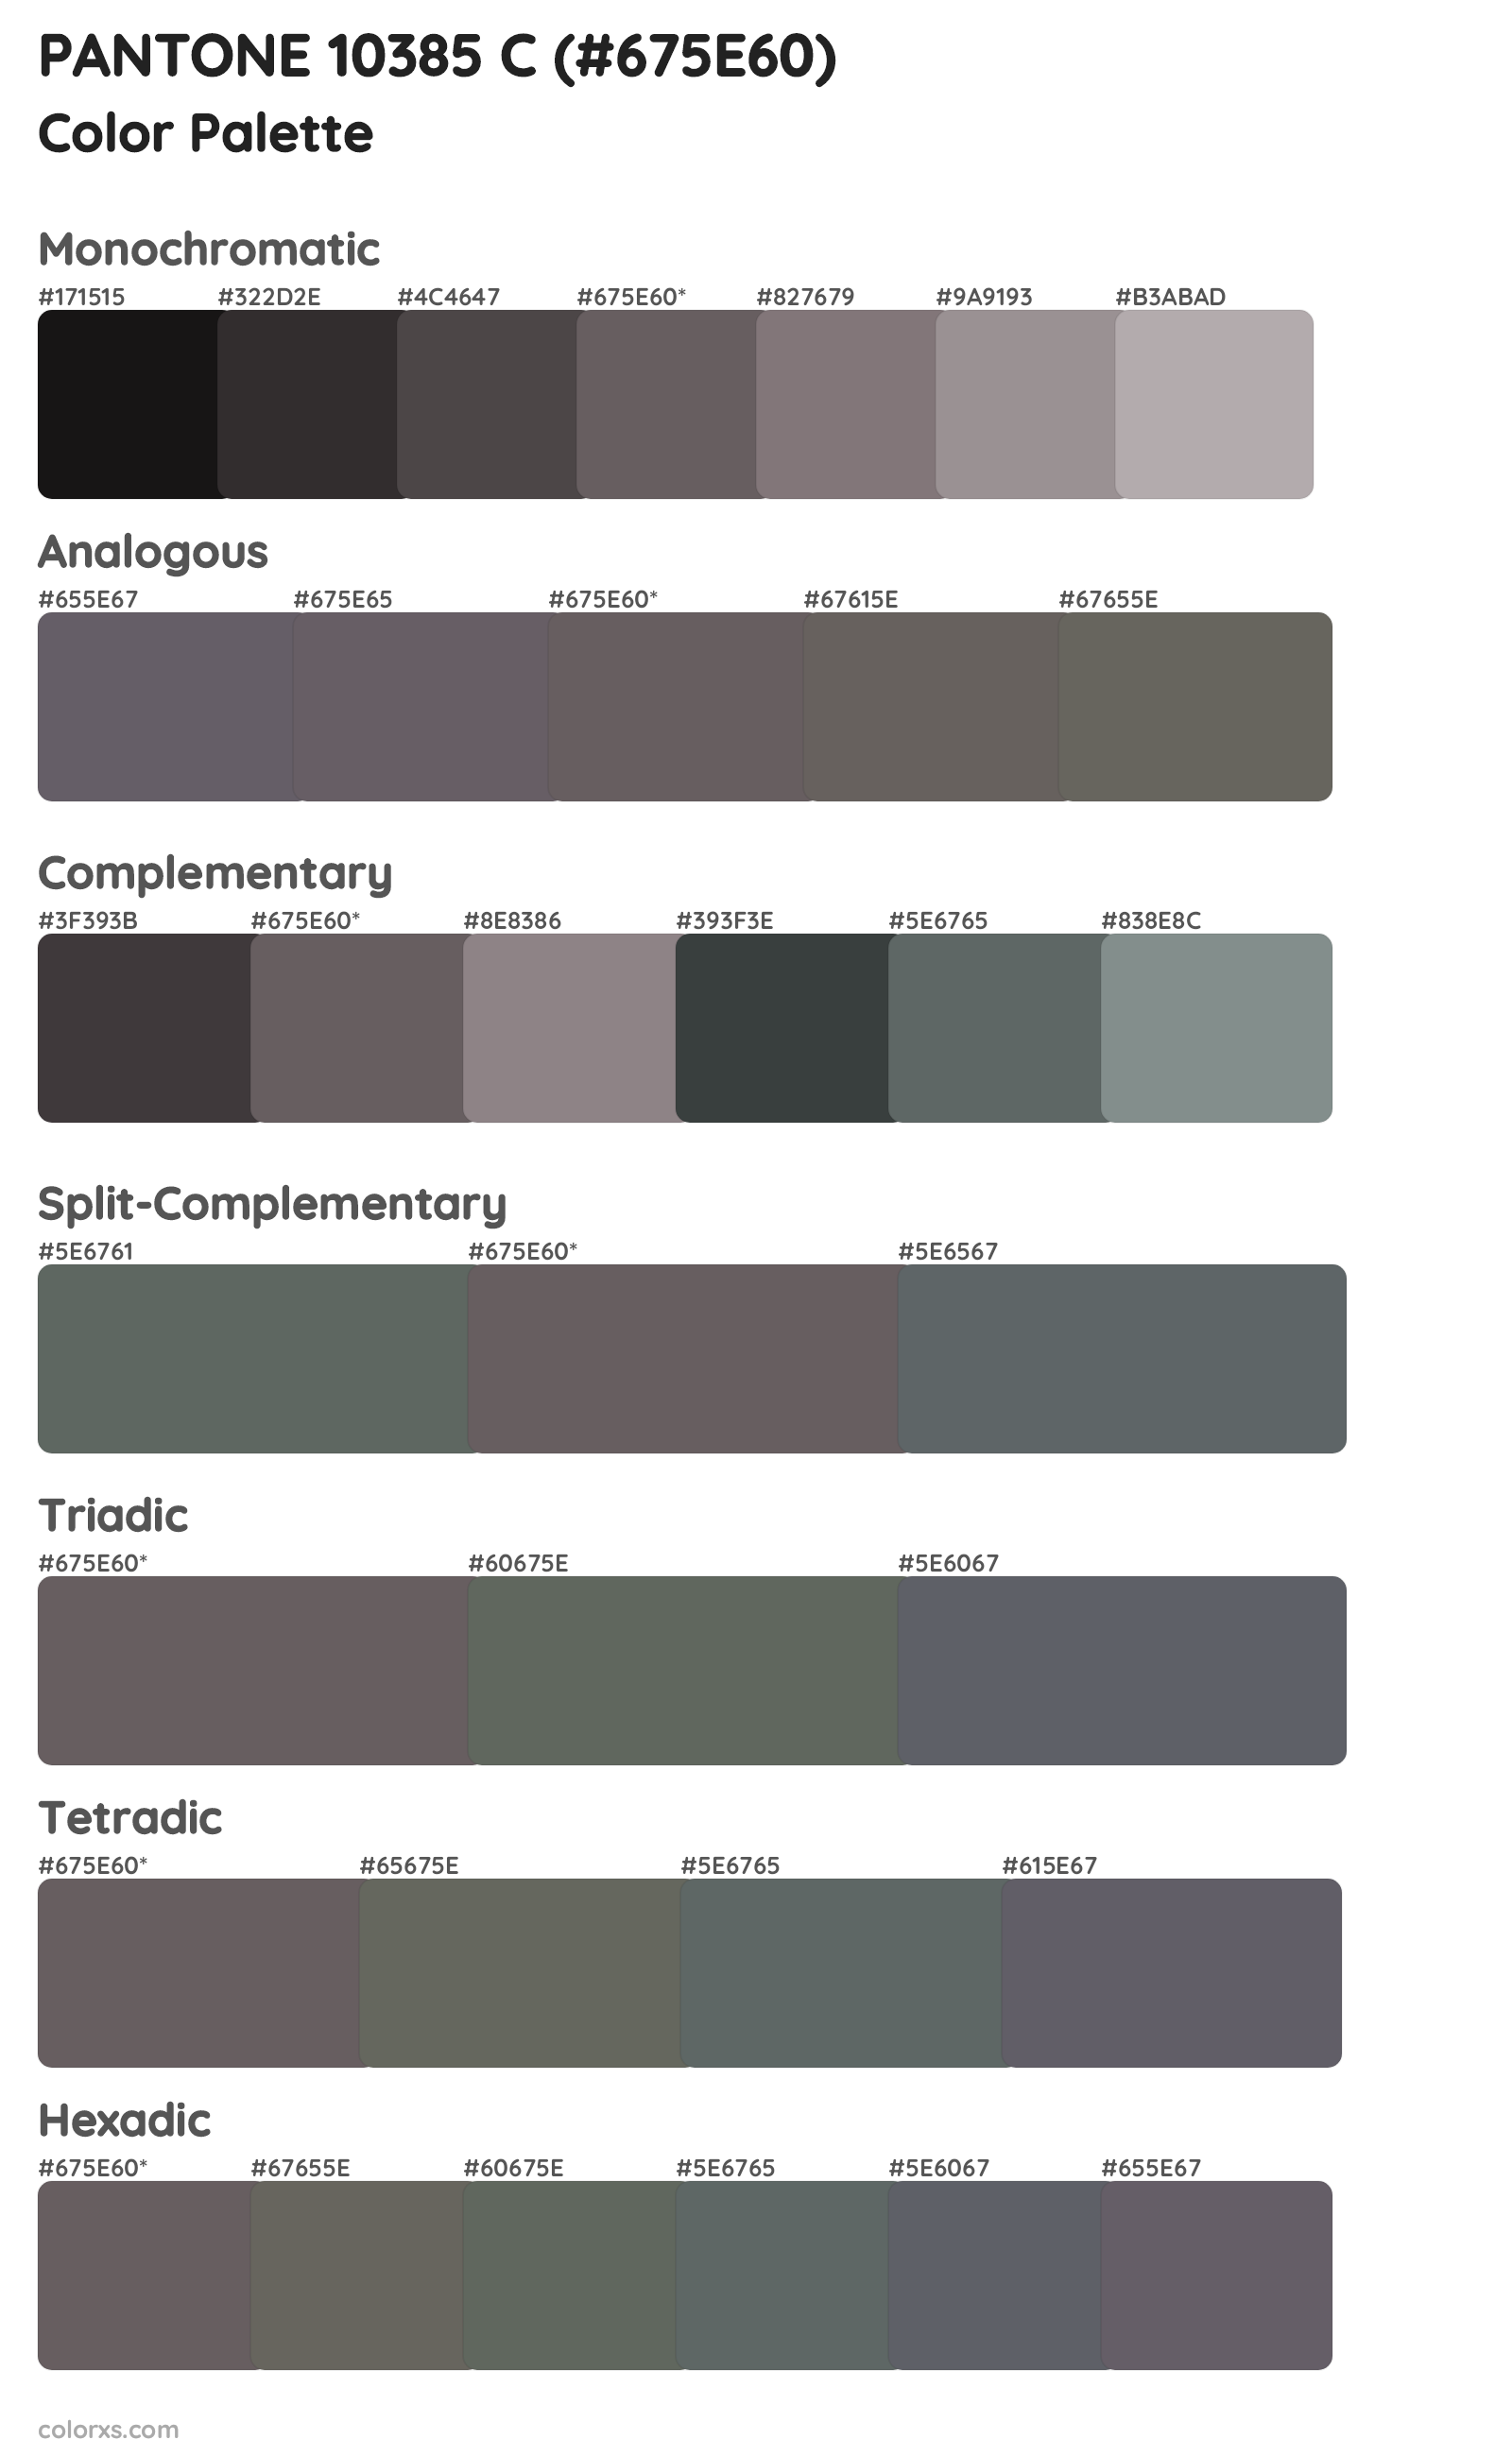 PANTONE 10385 C Color Scheme Palettes